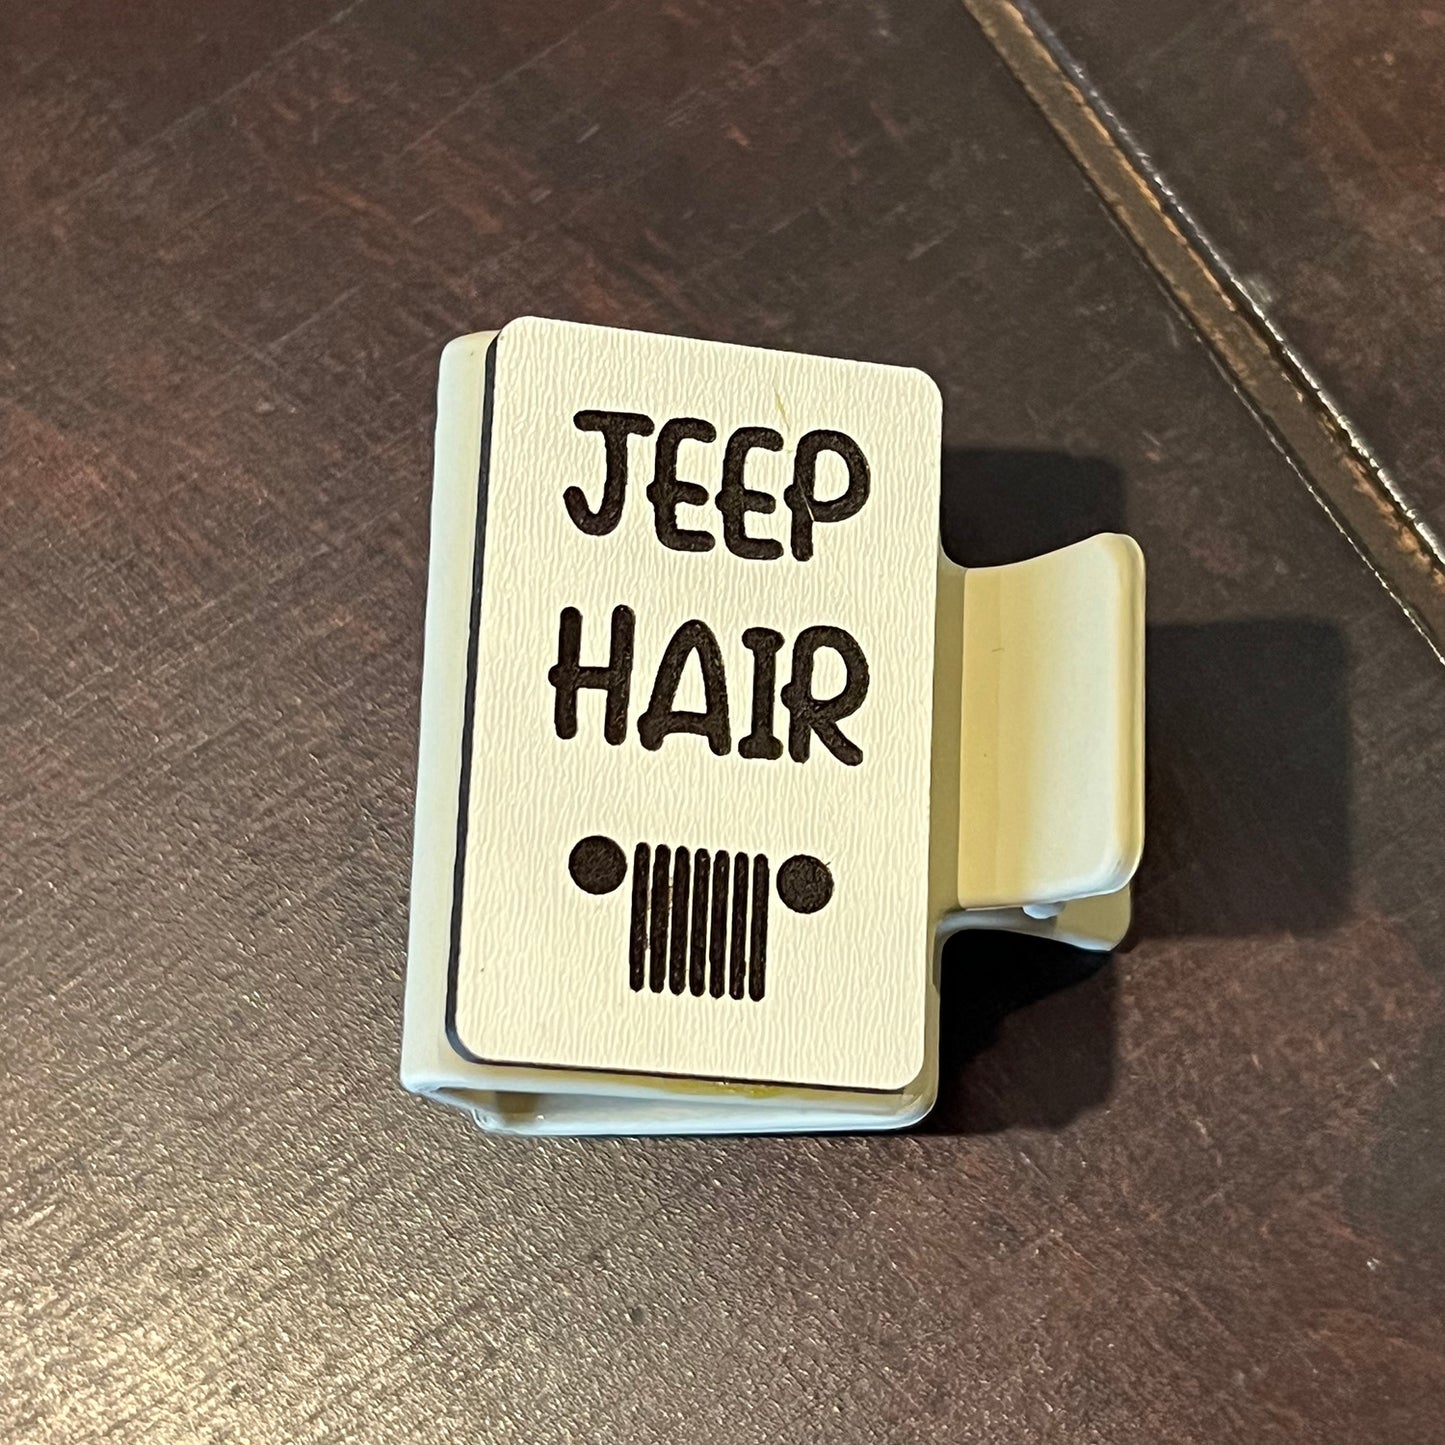 Jeep Hair Don't Care Hair Clip